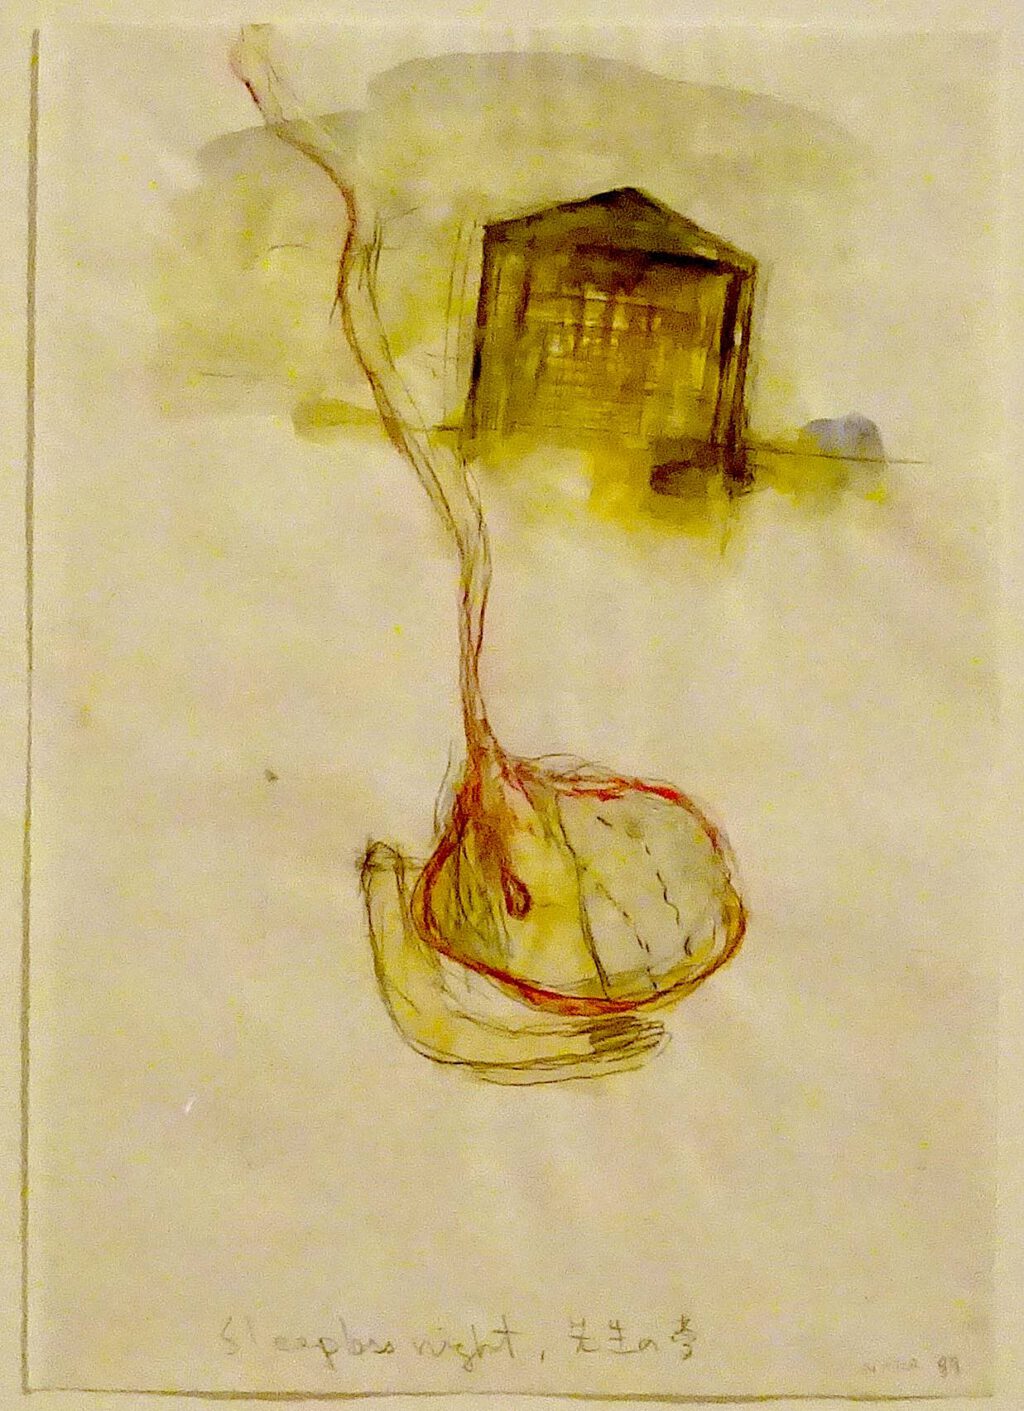 奈良美智 NARA Yoshitomo, work on paper, 1989